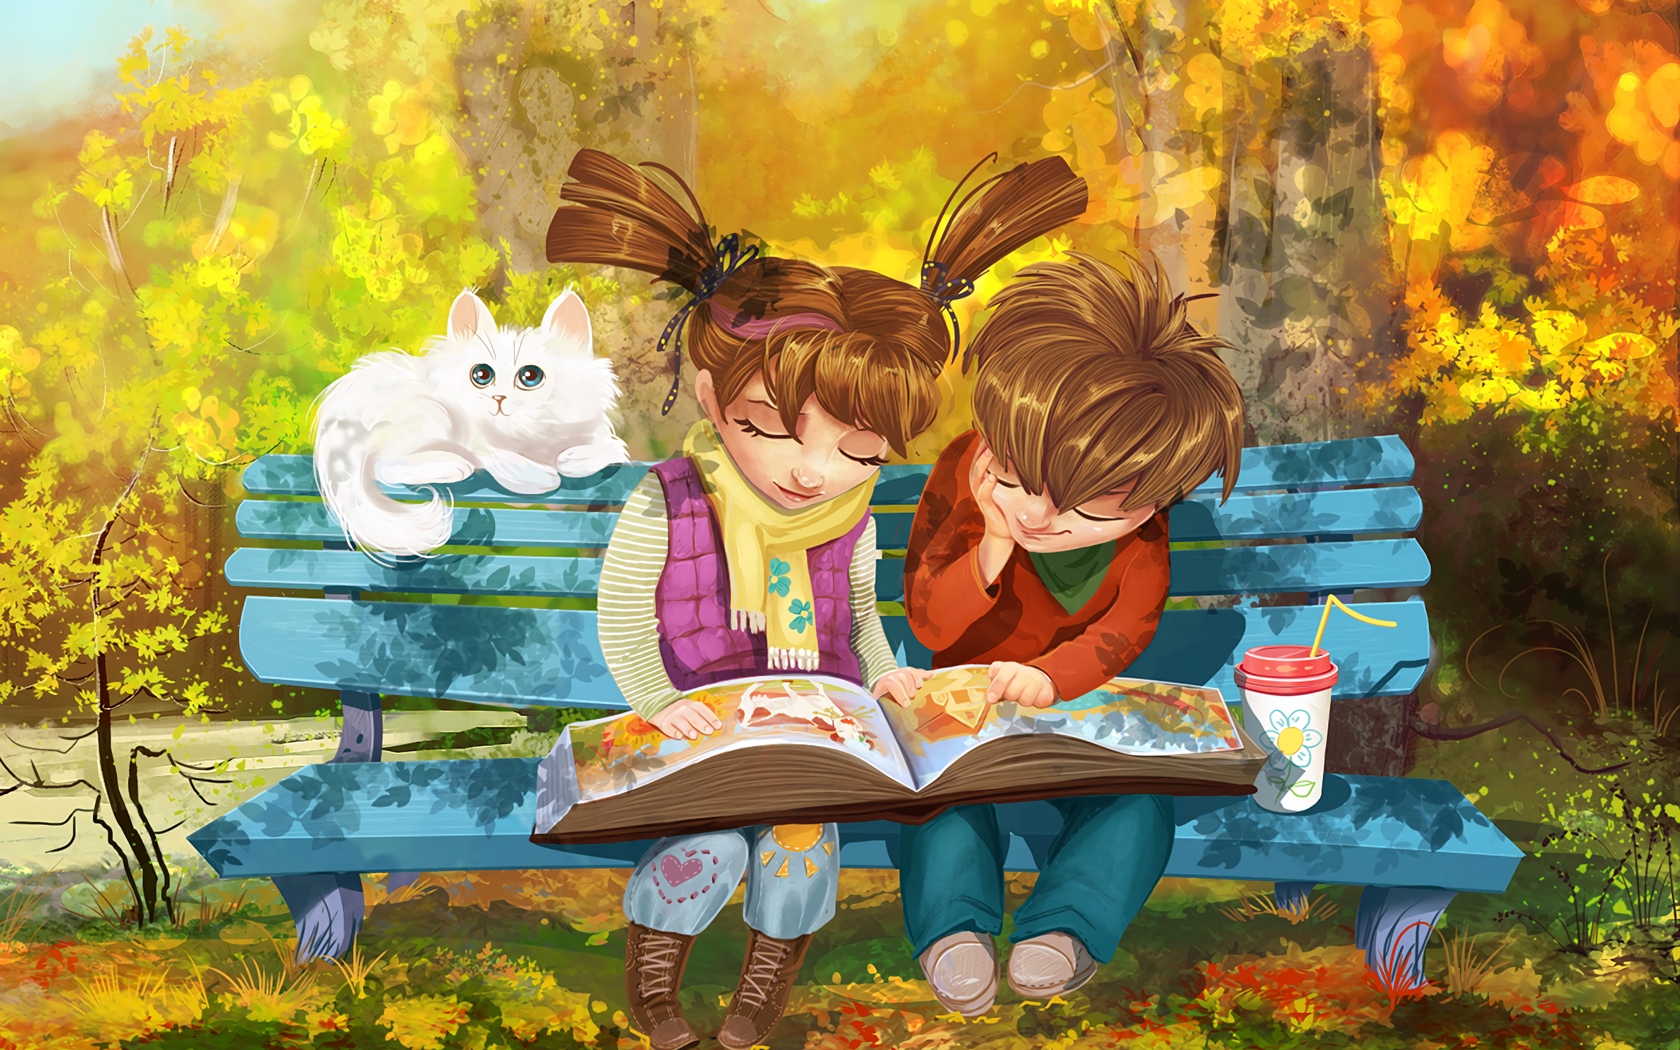 Wallpaper Boy, Girl, Cat, Bench, Park, Cute - Painting Cartoon Girl And Boy - HD Wallpaper 